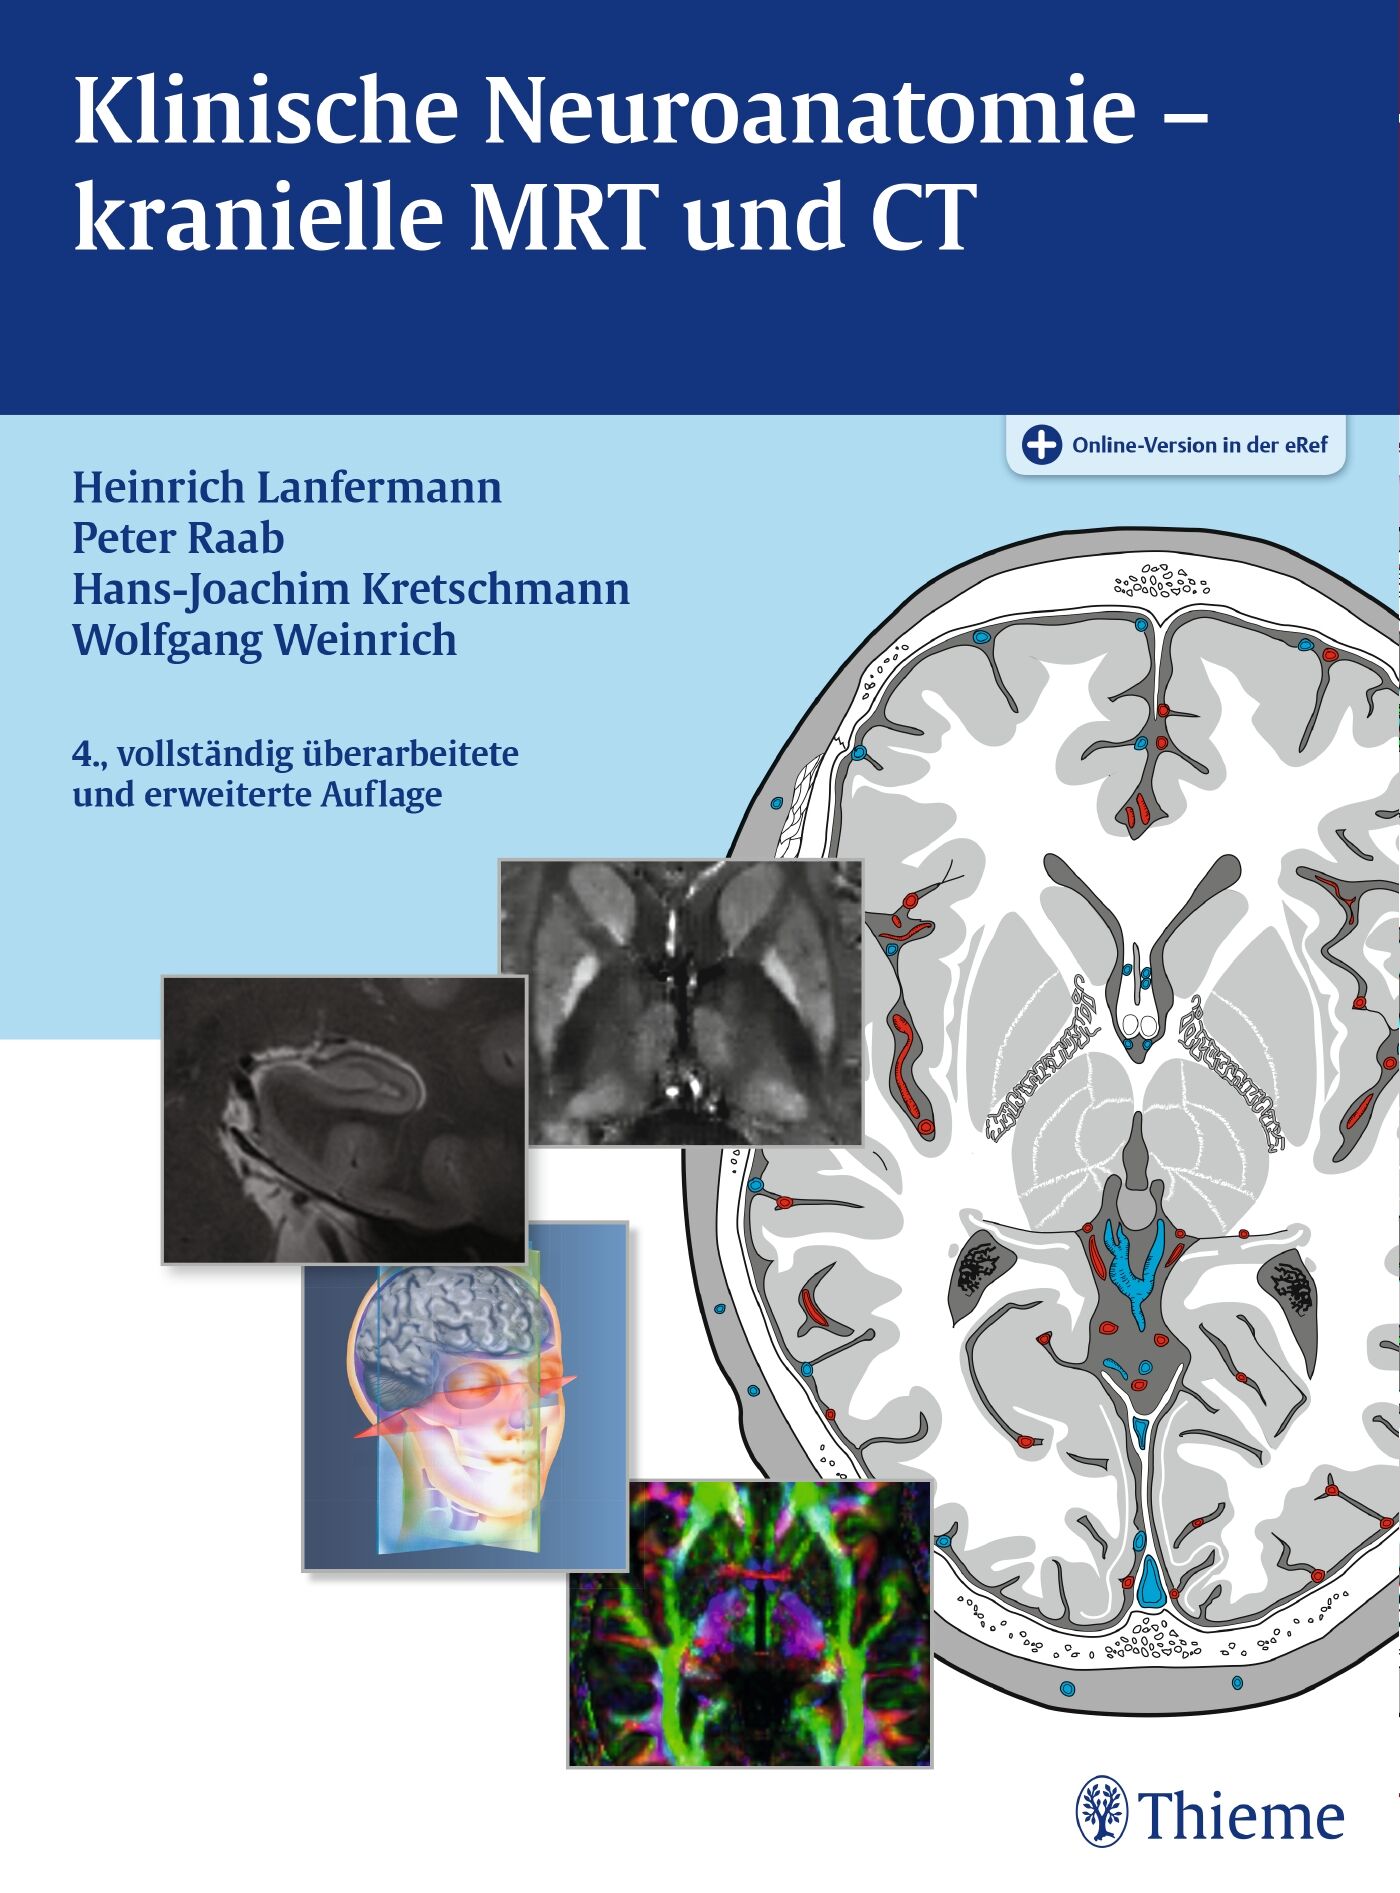 Klinische Neuroanatomie - kranielle MRT und CT, 9783132401433